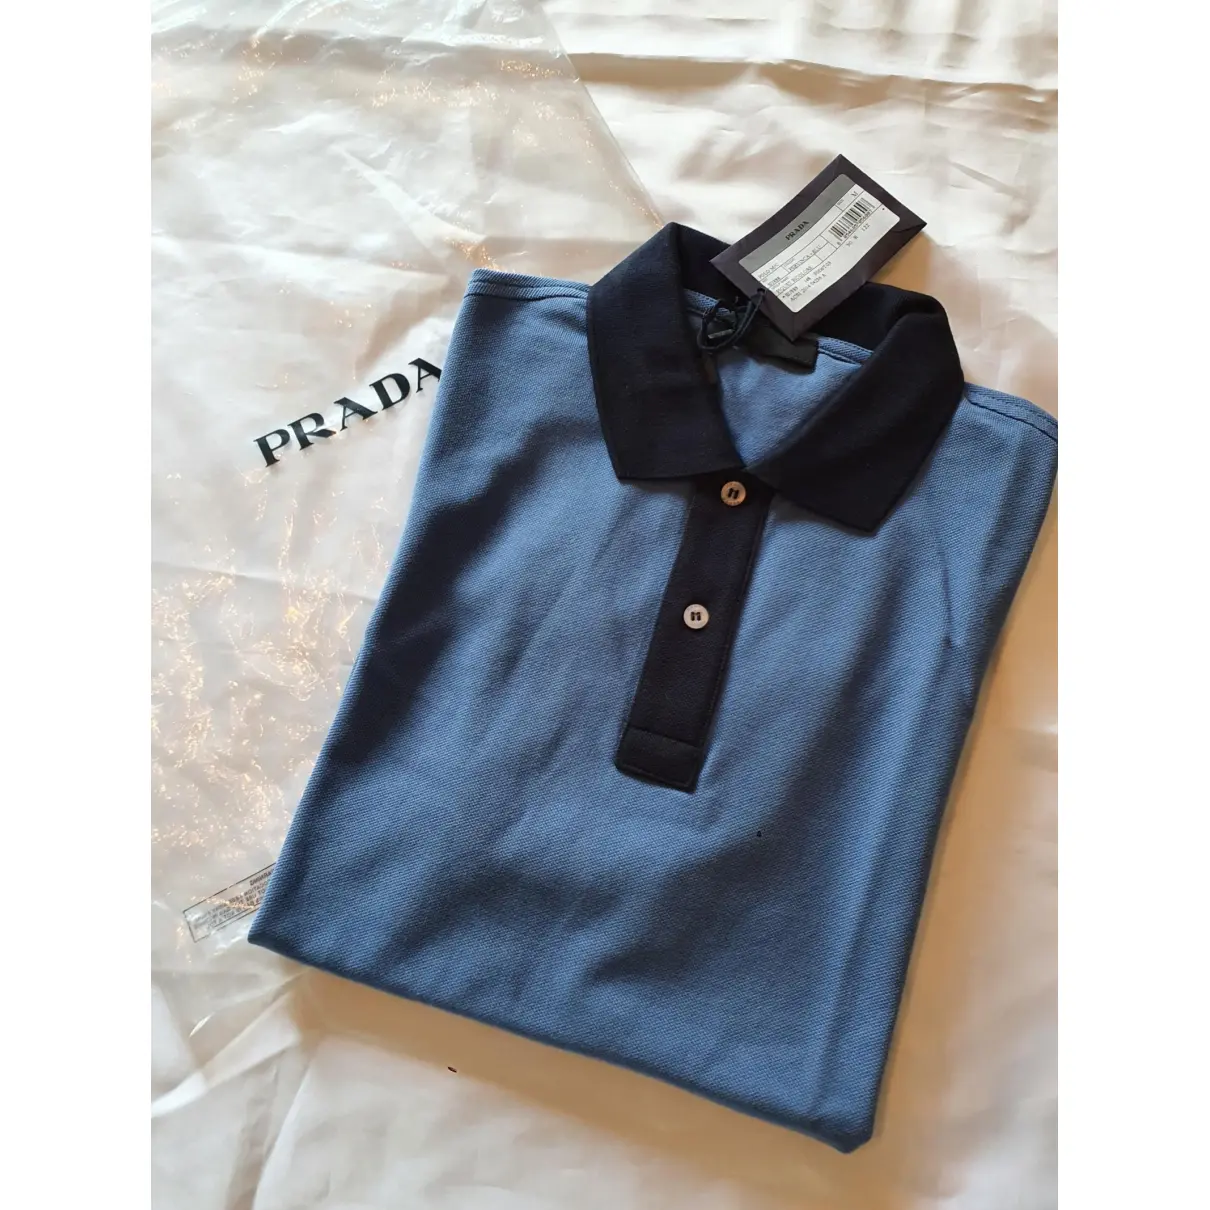 Prada Polo shirt for sale - Vintage